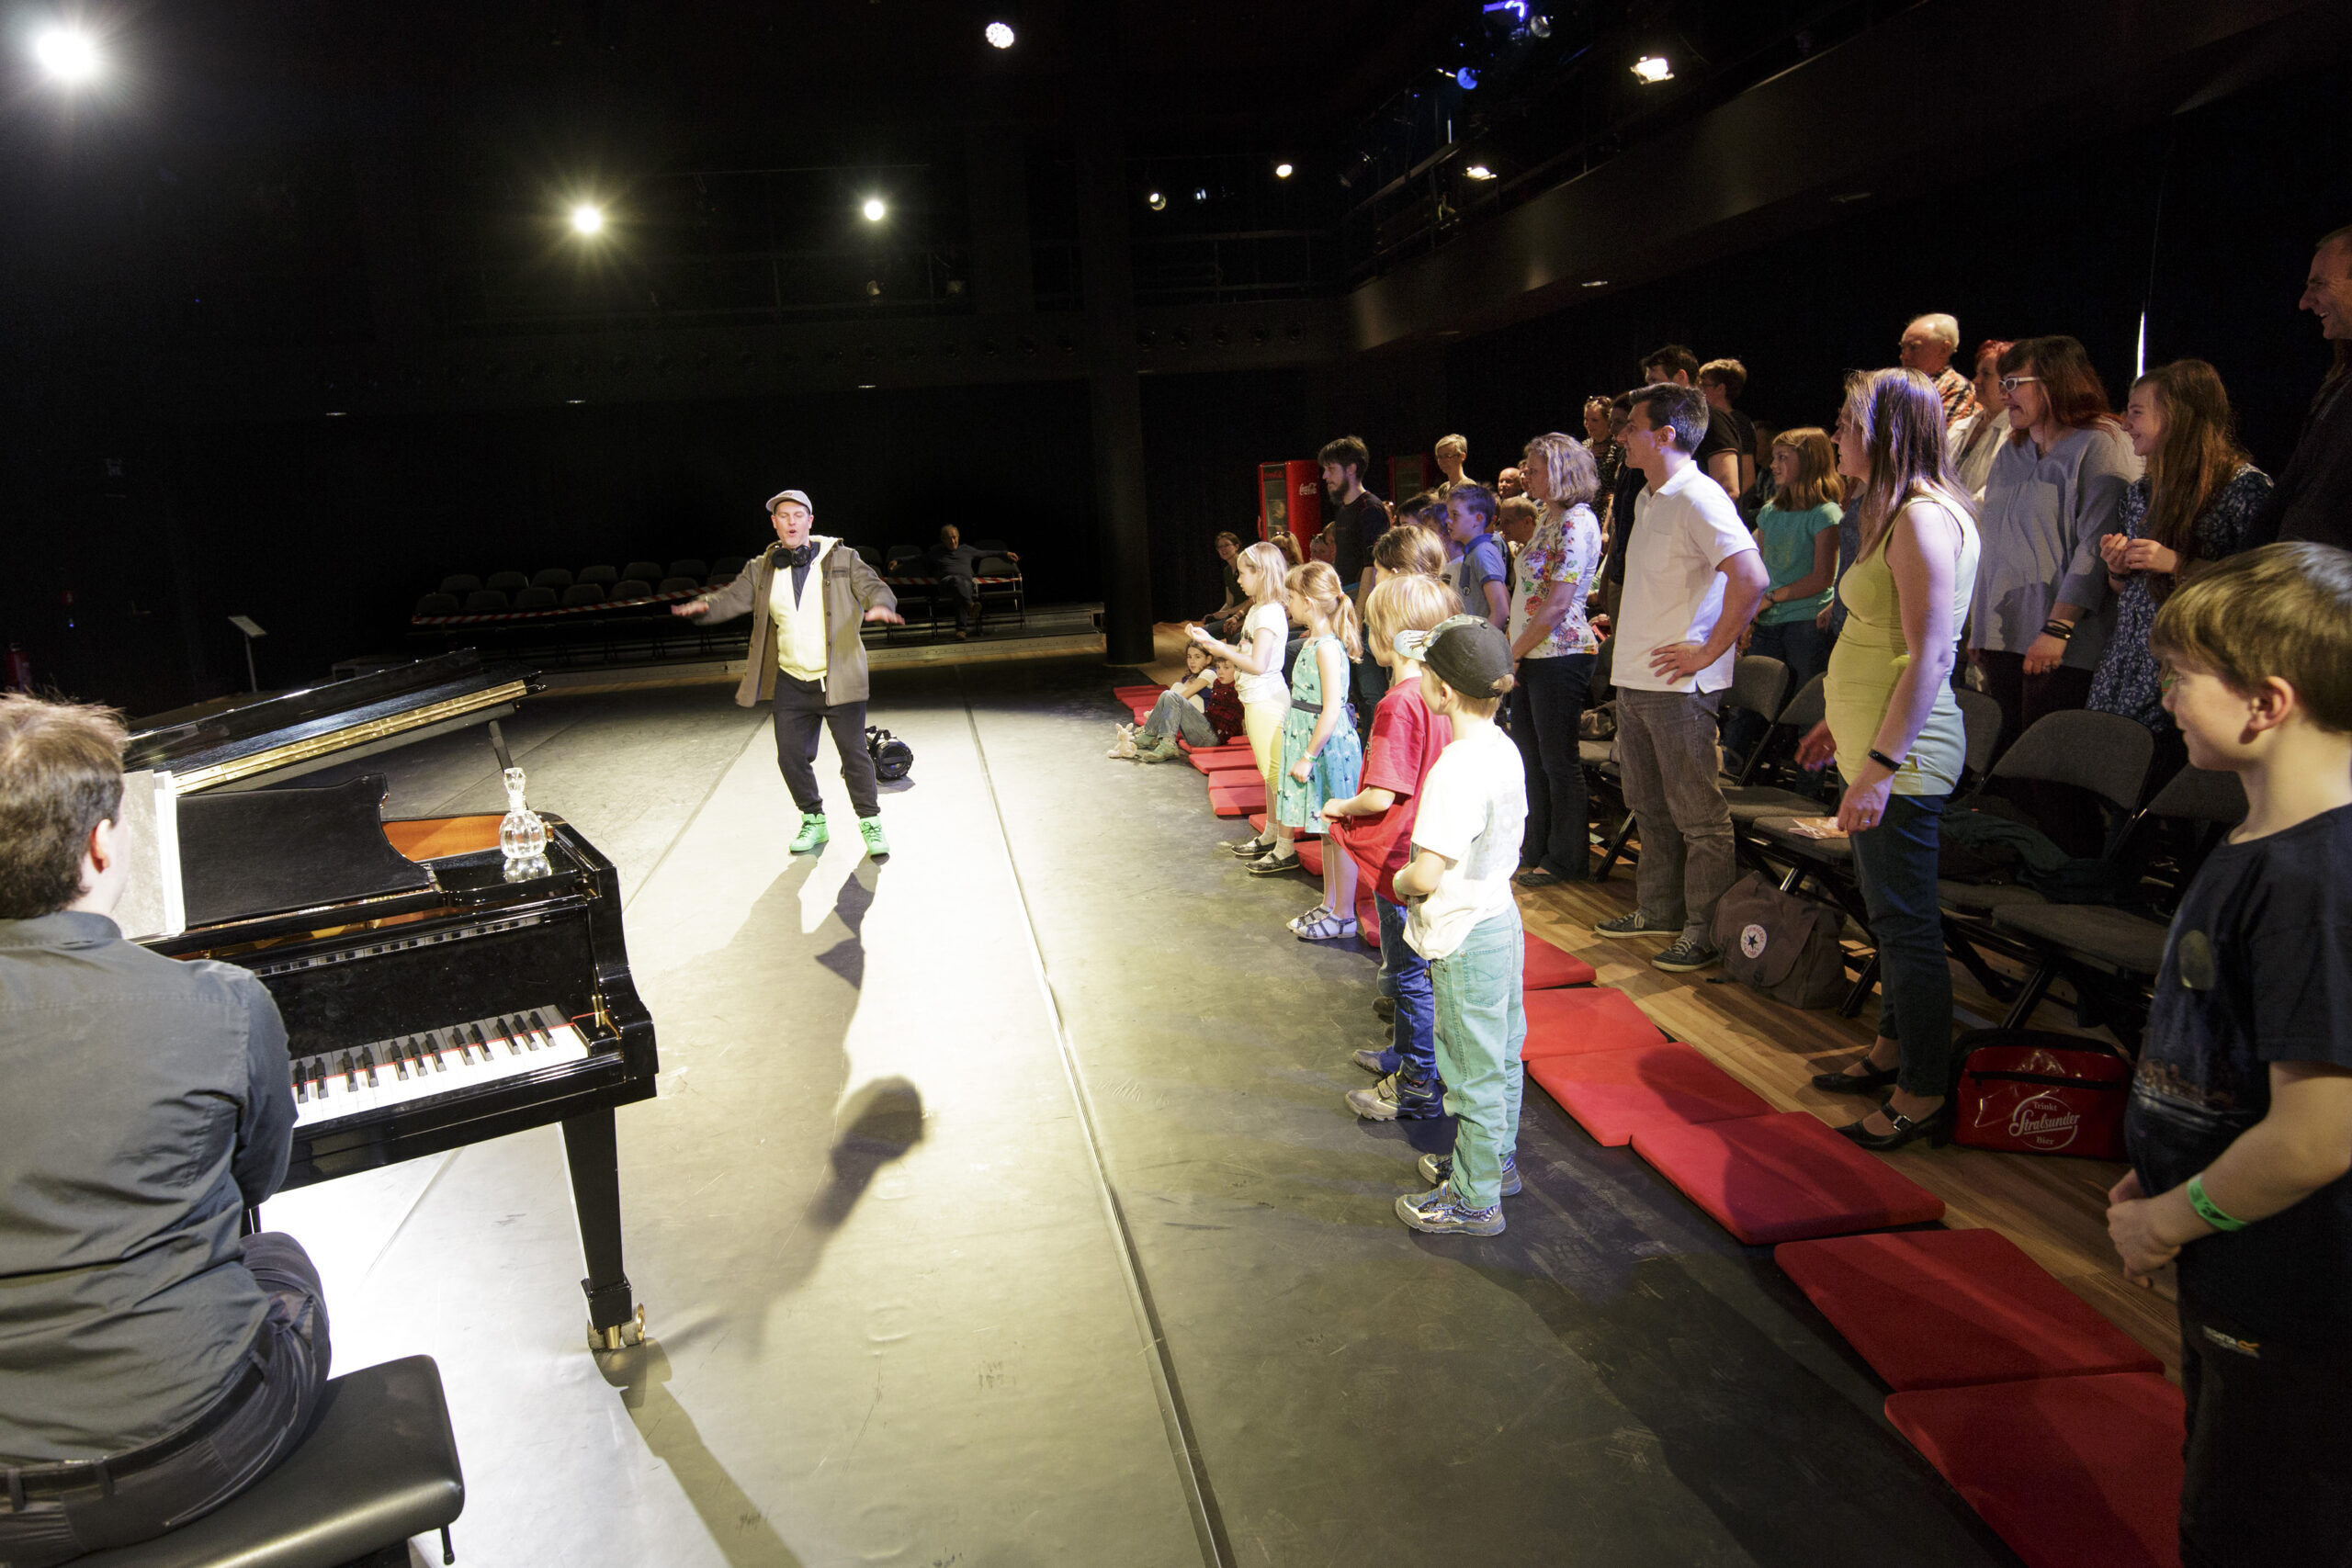 Ein Mann tanzt auf der Bühne. Kinder sehen zu. Links im Bild sieht man einen Klavierspieler.